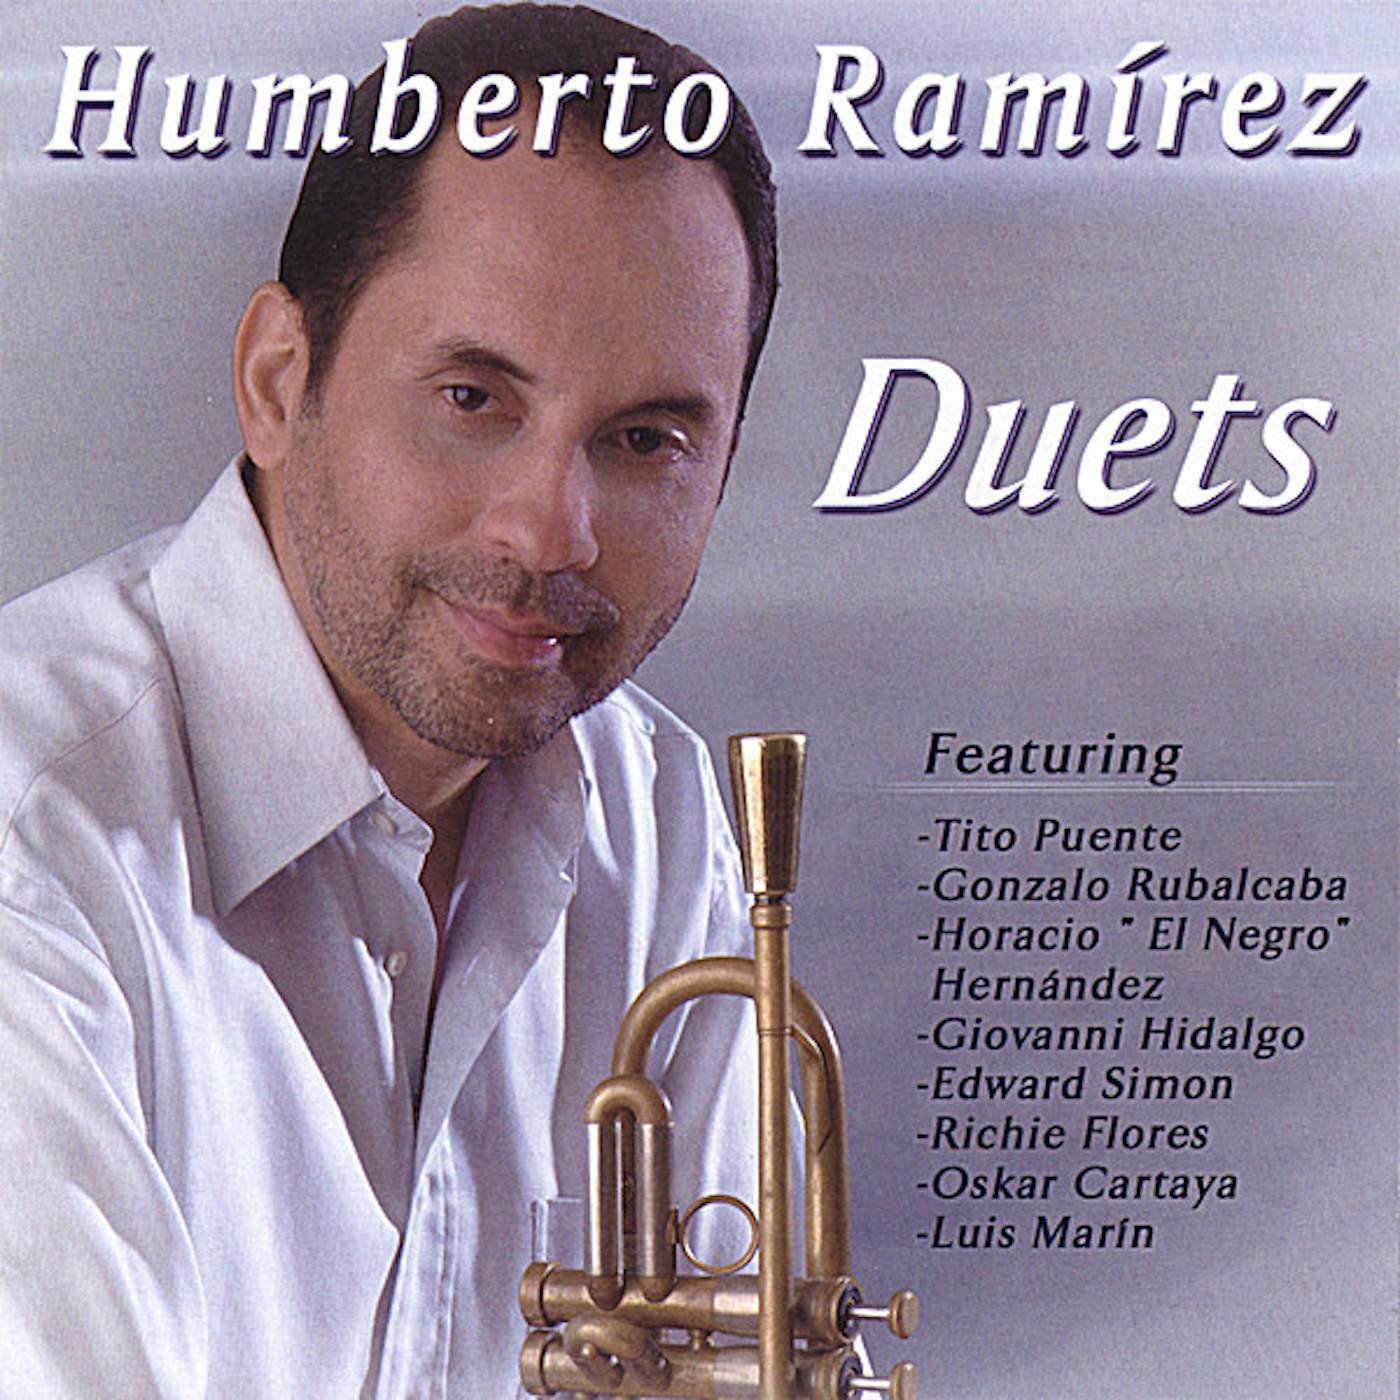 Humberto Ramirez DUETS CD